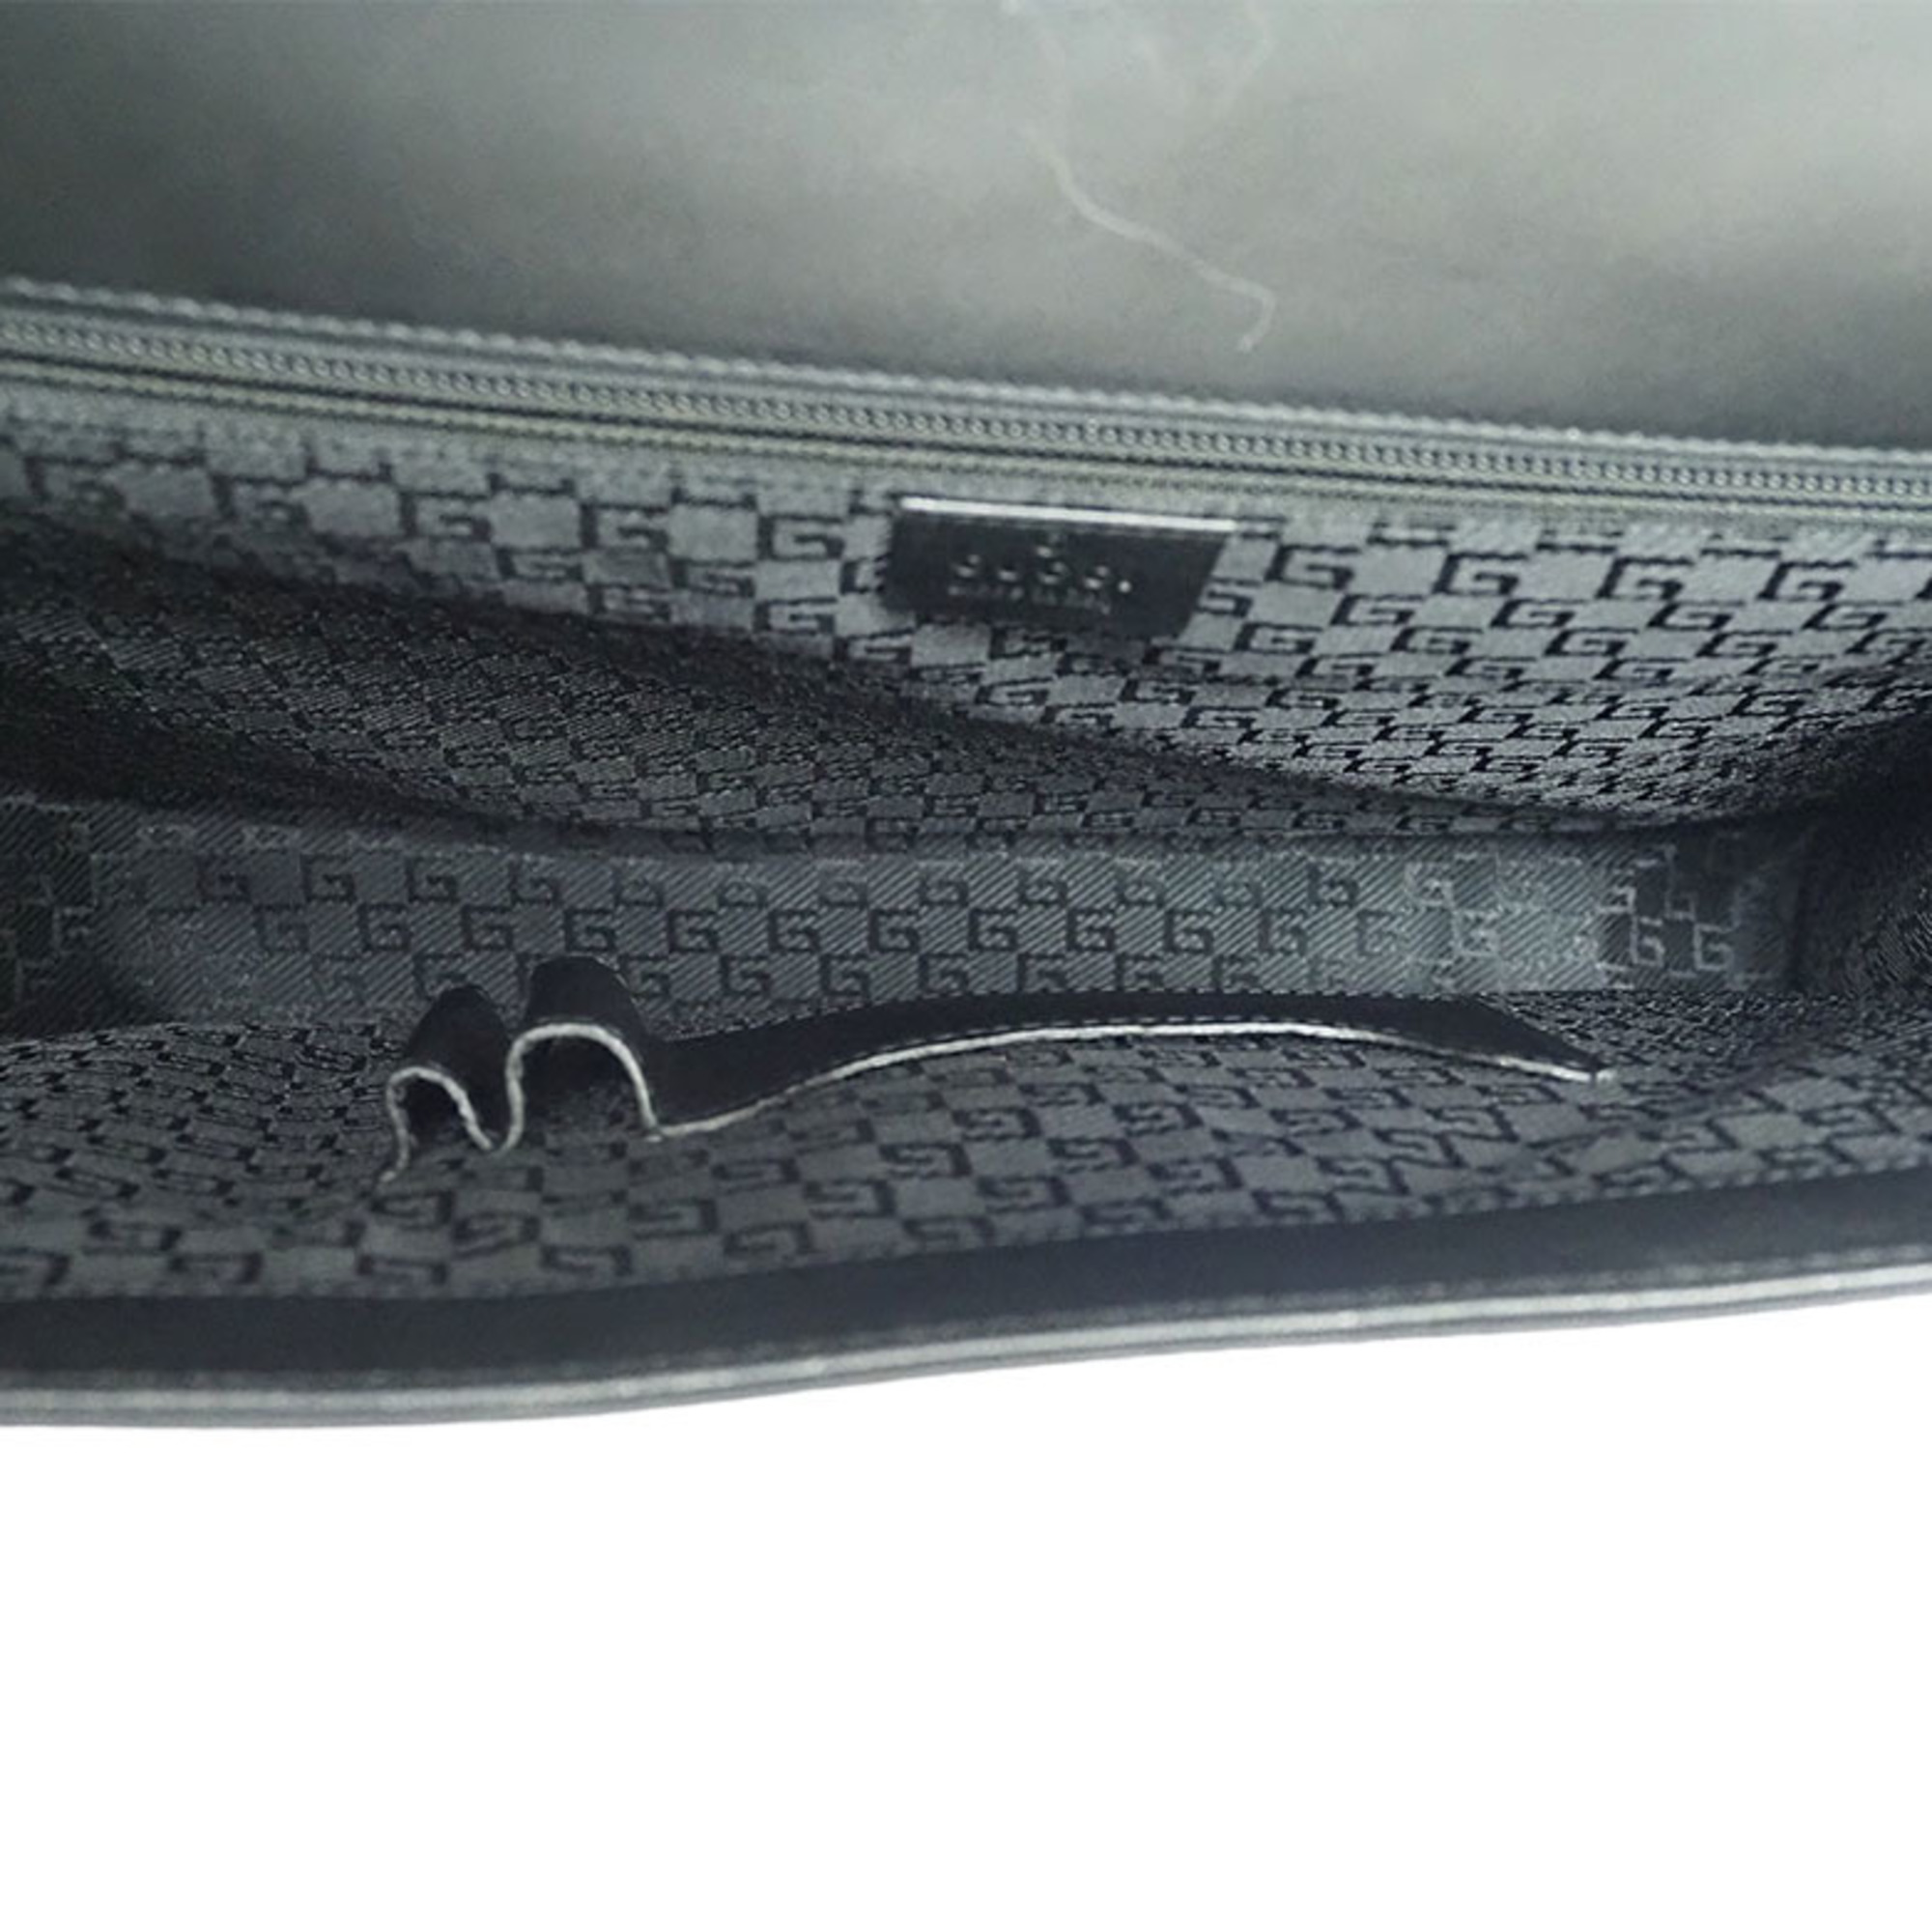 Gucci Business Bag Briefcase Black Nylon Leather A4 Men's GUCCI